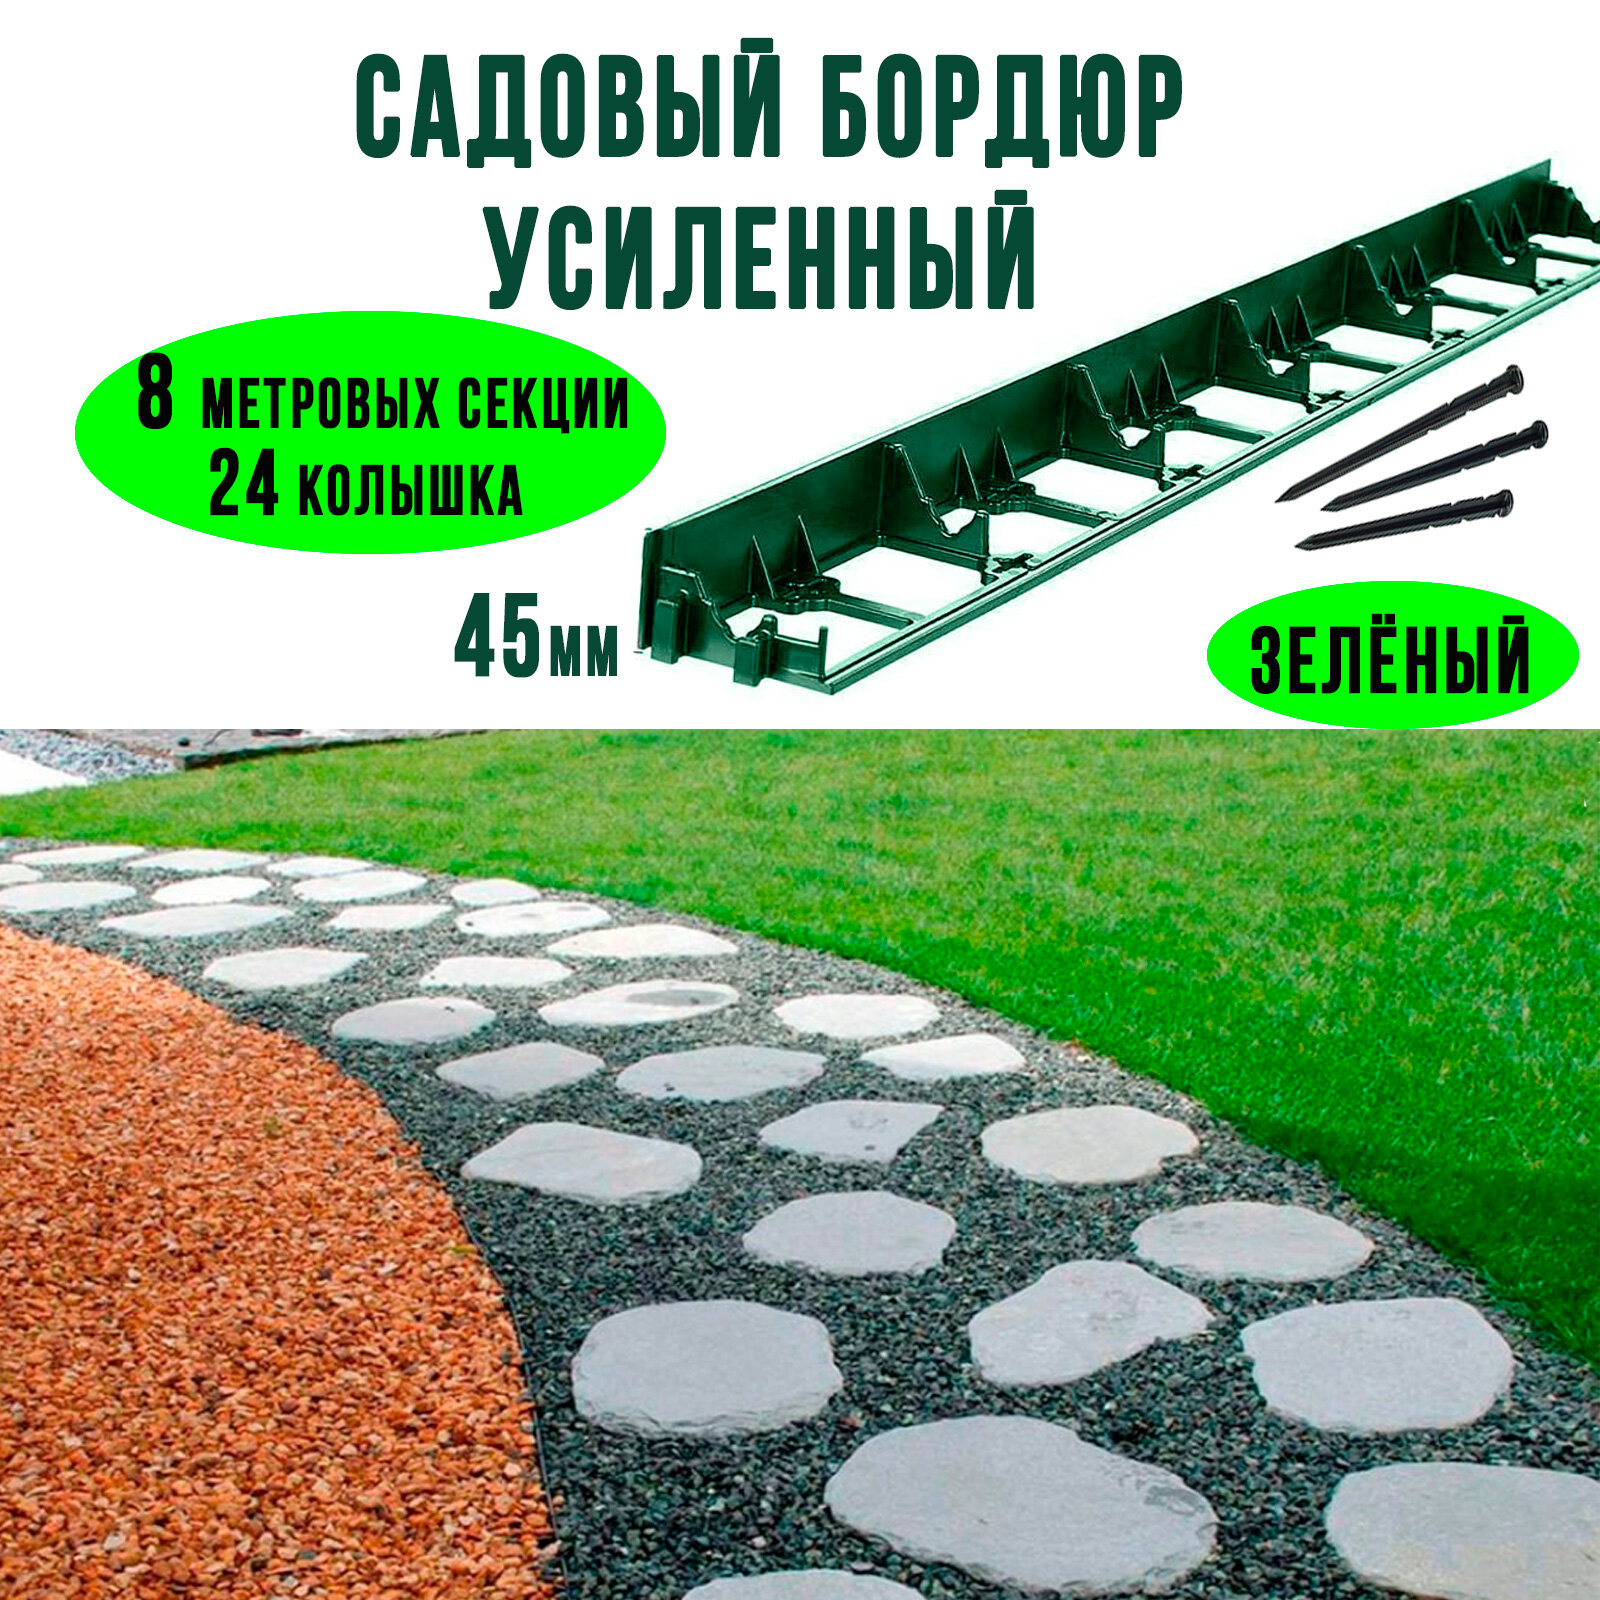 Бордюр ГеоПластБорд садовый пластиковый высота 45 мм + 24 колышка